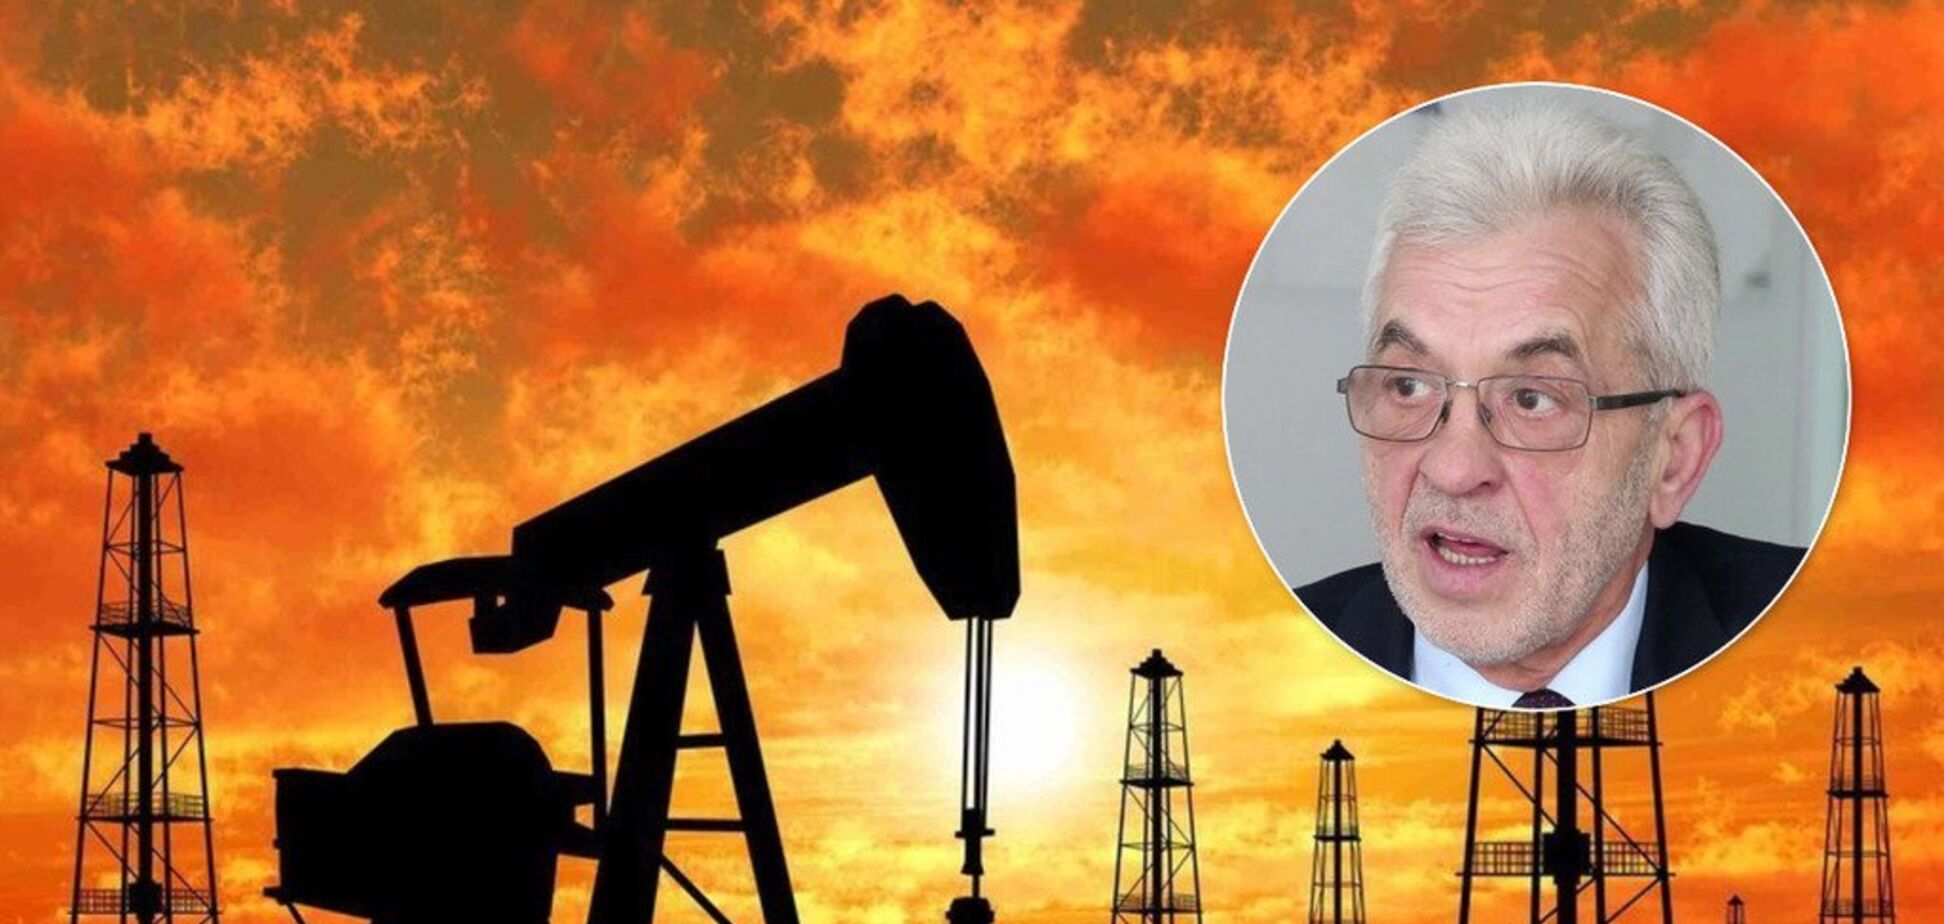 Атака США по Ираку ударит по ценам на нефть: экономист спрогнозировал стоимость